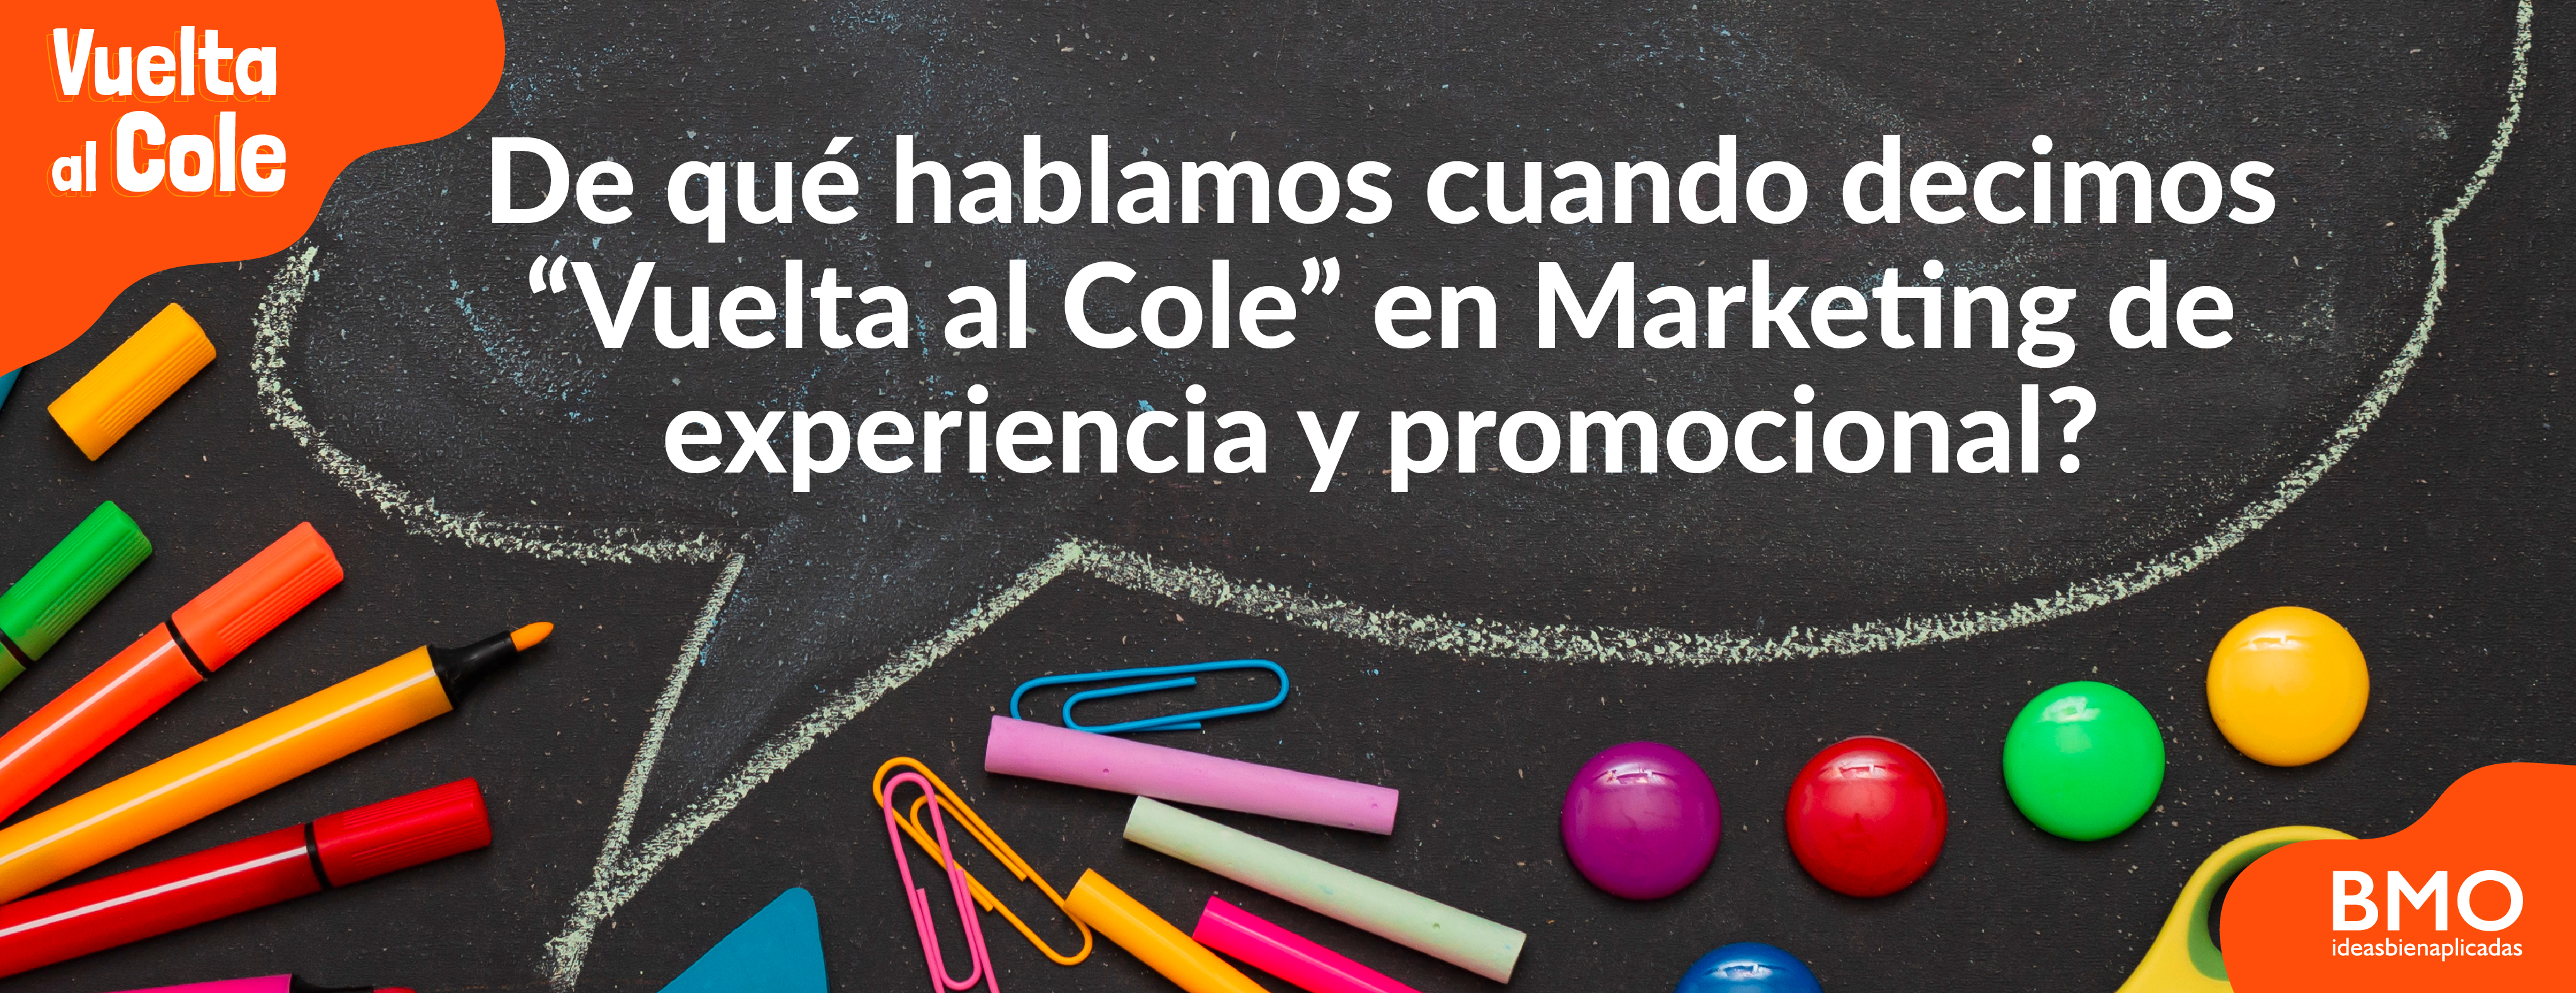 ¿De qué hablamos cuando decimos “Vuelta al Cole” en Marketing de experiencia y promocional?